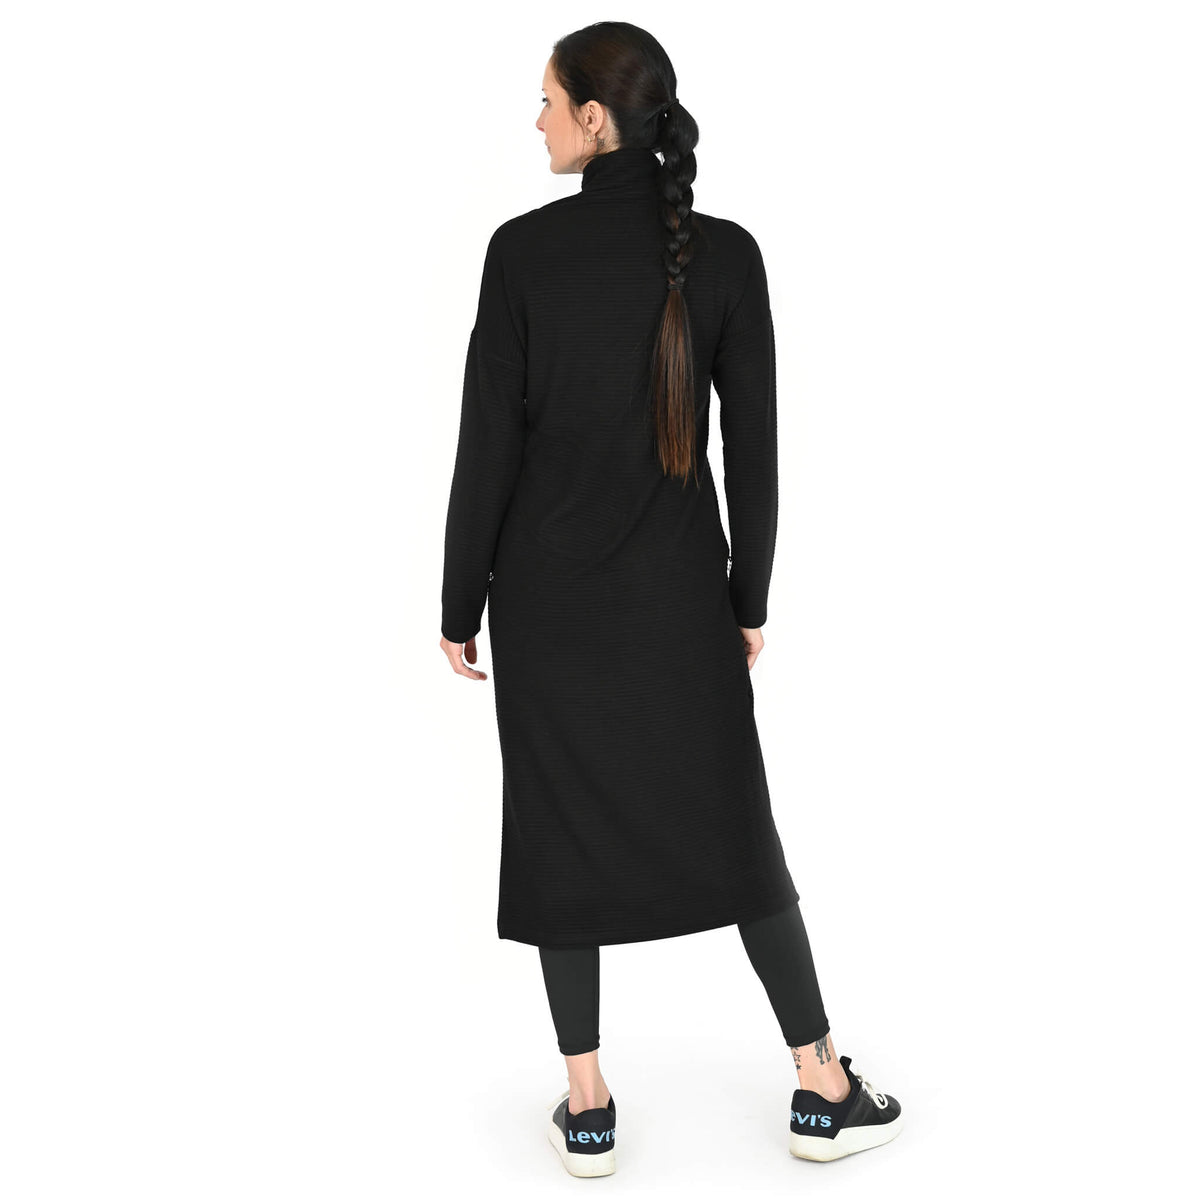 La robe Emma en tricot noir : une création de KSL